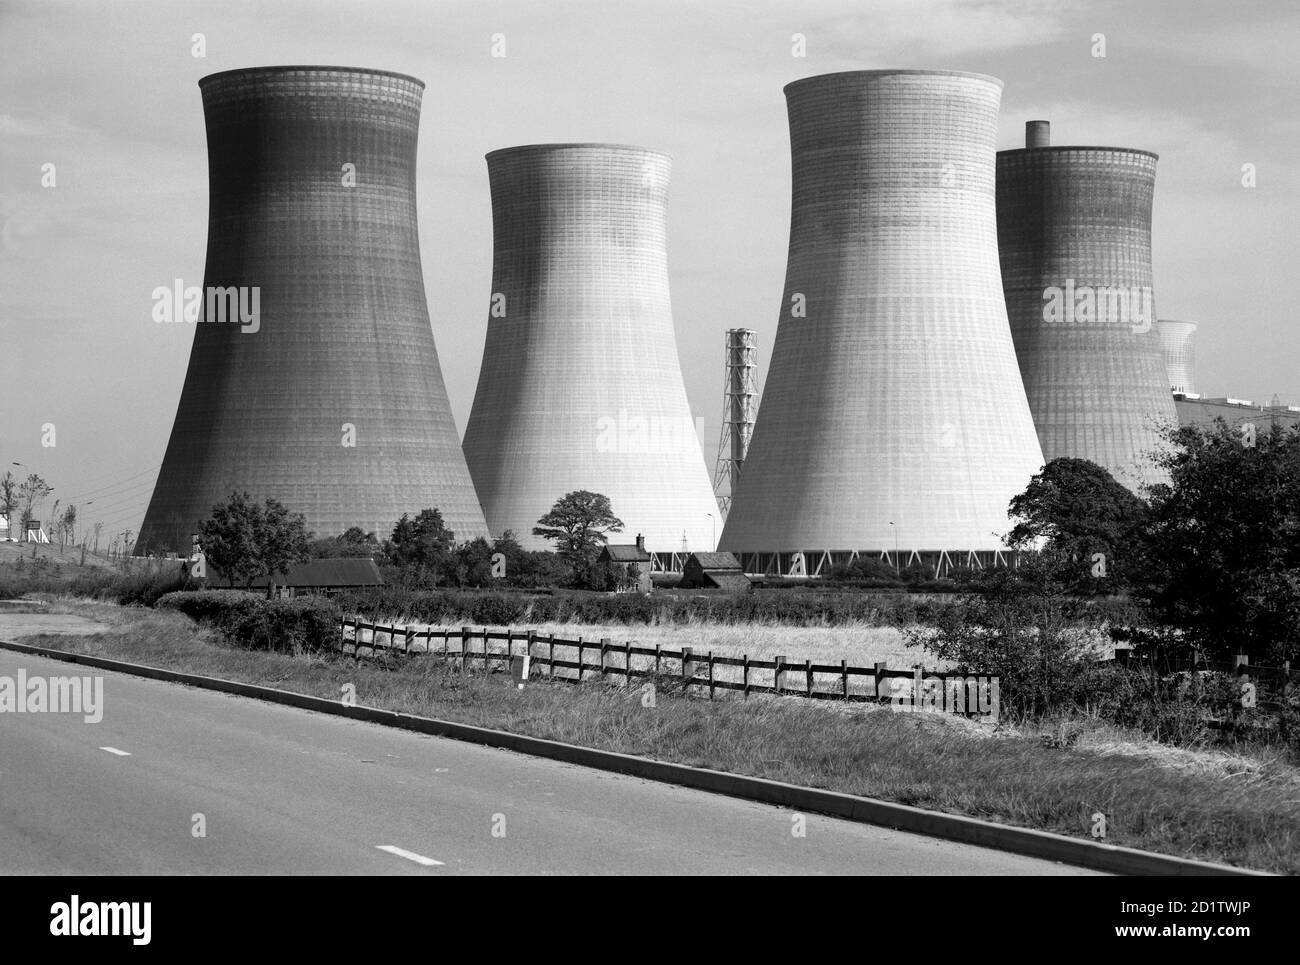 Lincolnshire. Vue générale montrant les tours de refroidissement d'une centrale électrique non identifiée. Photographié par Eric de Mare. Banque D'Images